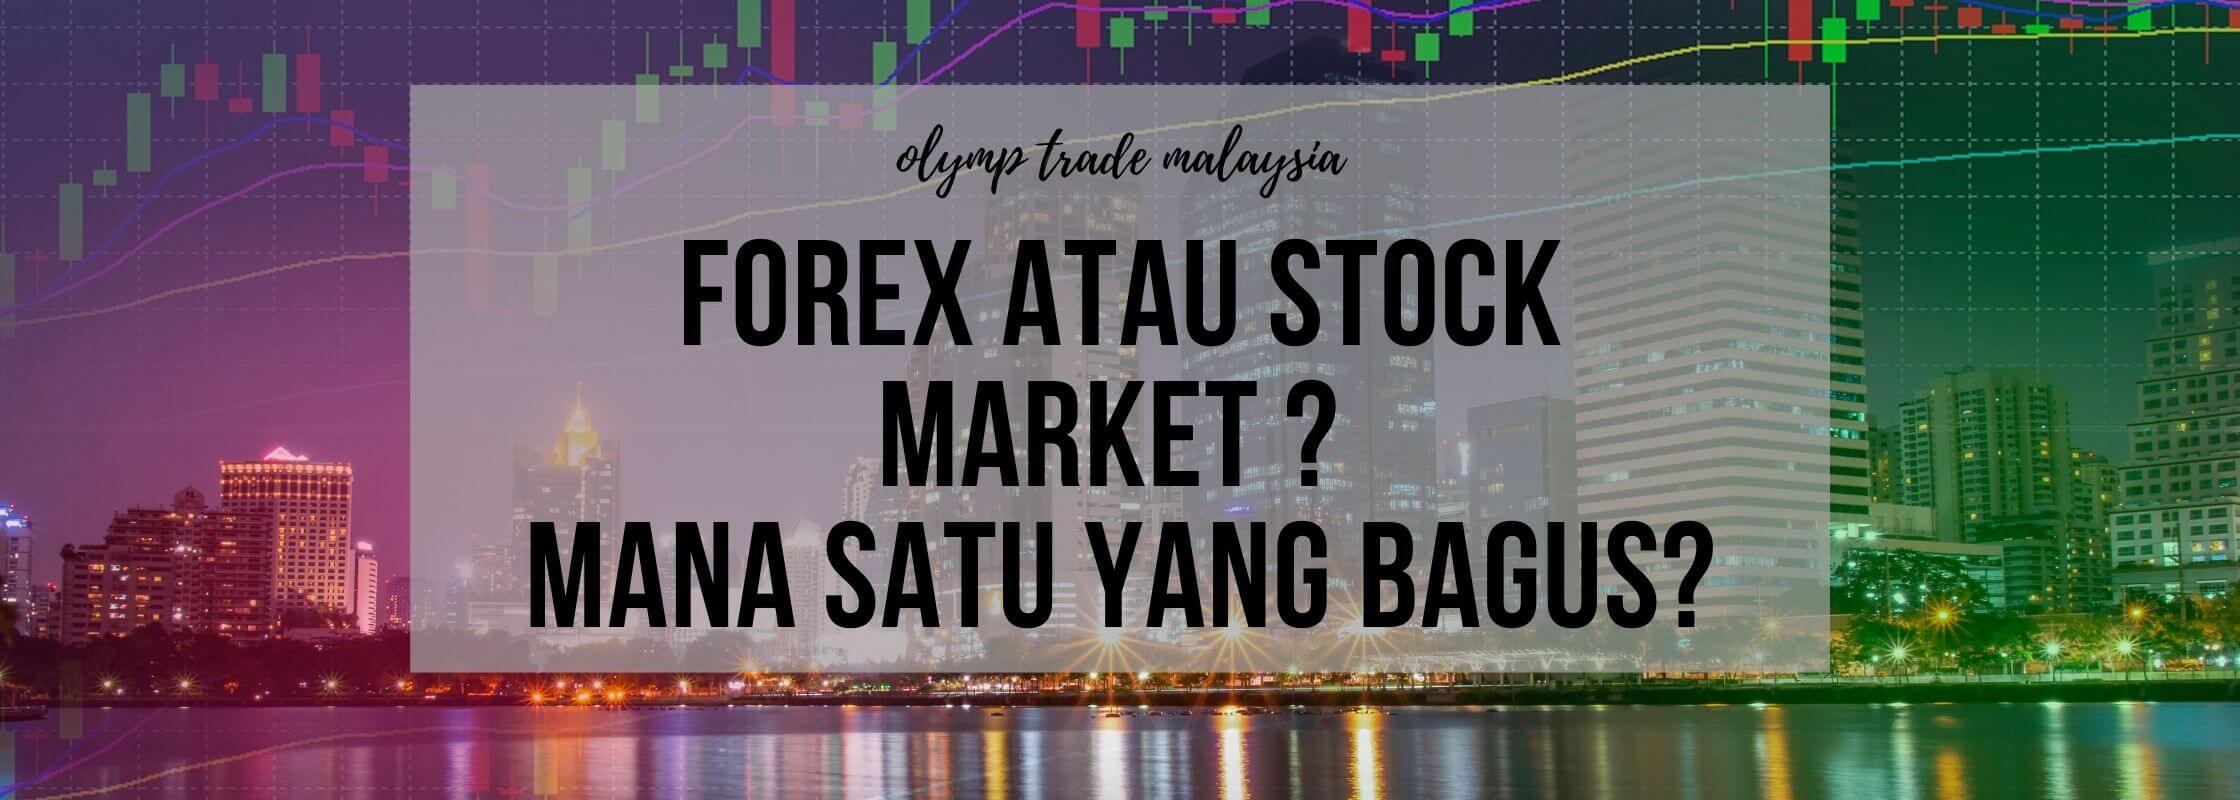 forex atau stock market di platform olymp trade